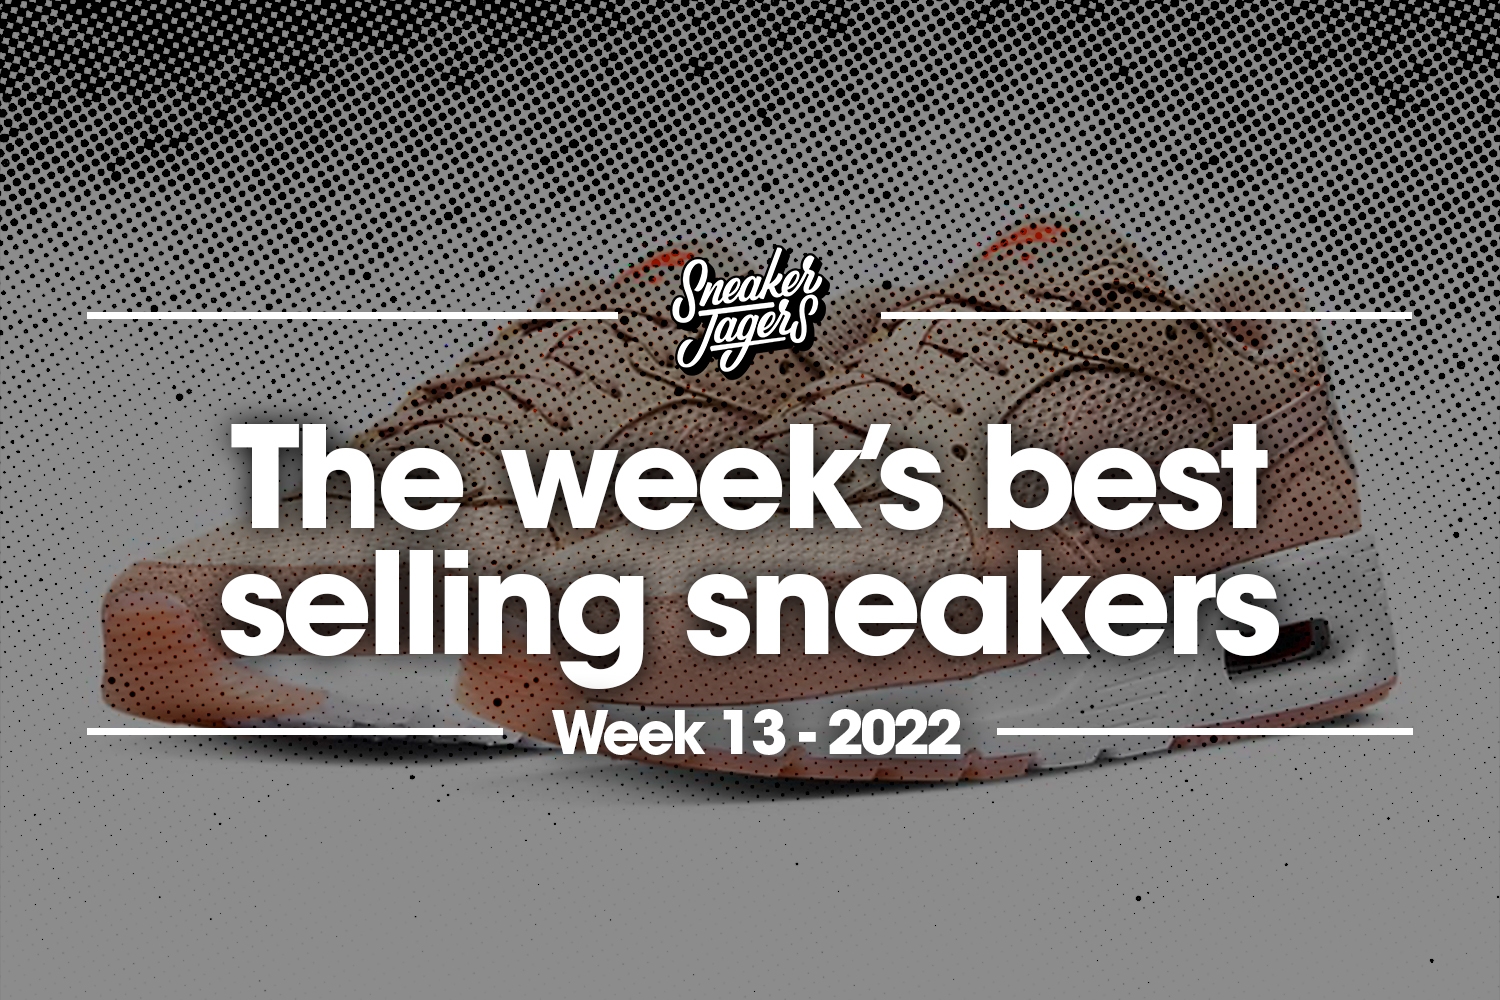 De 5 bestverkochte sneakers van week 13